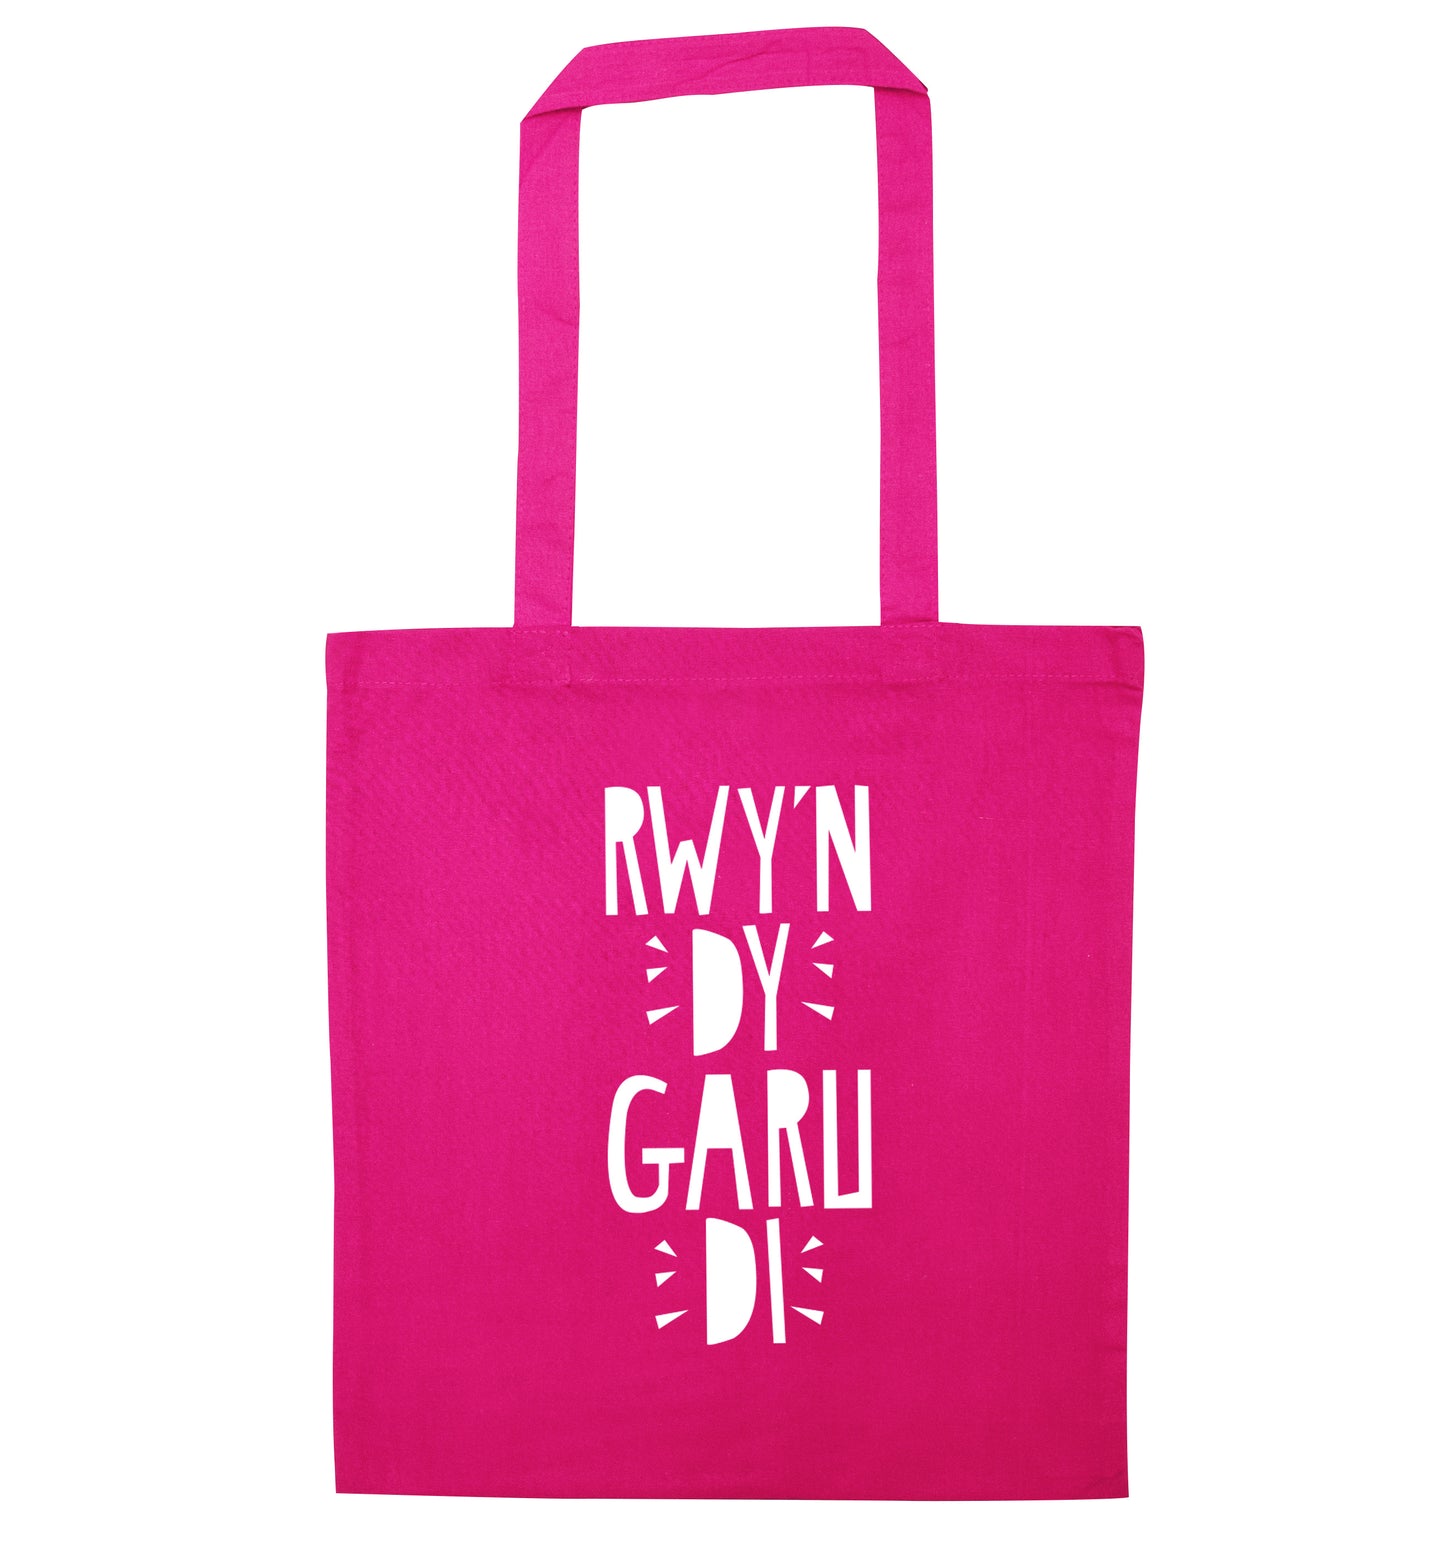 Rwy'n dy garu di - I love you pink tote bag